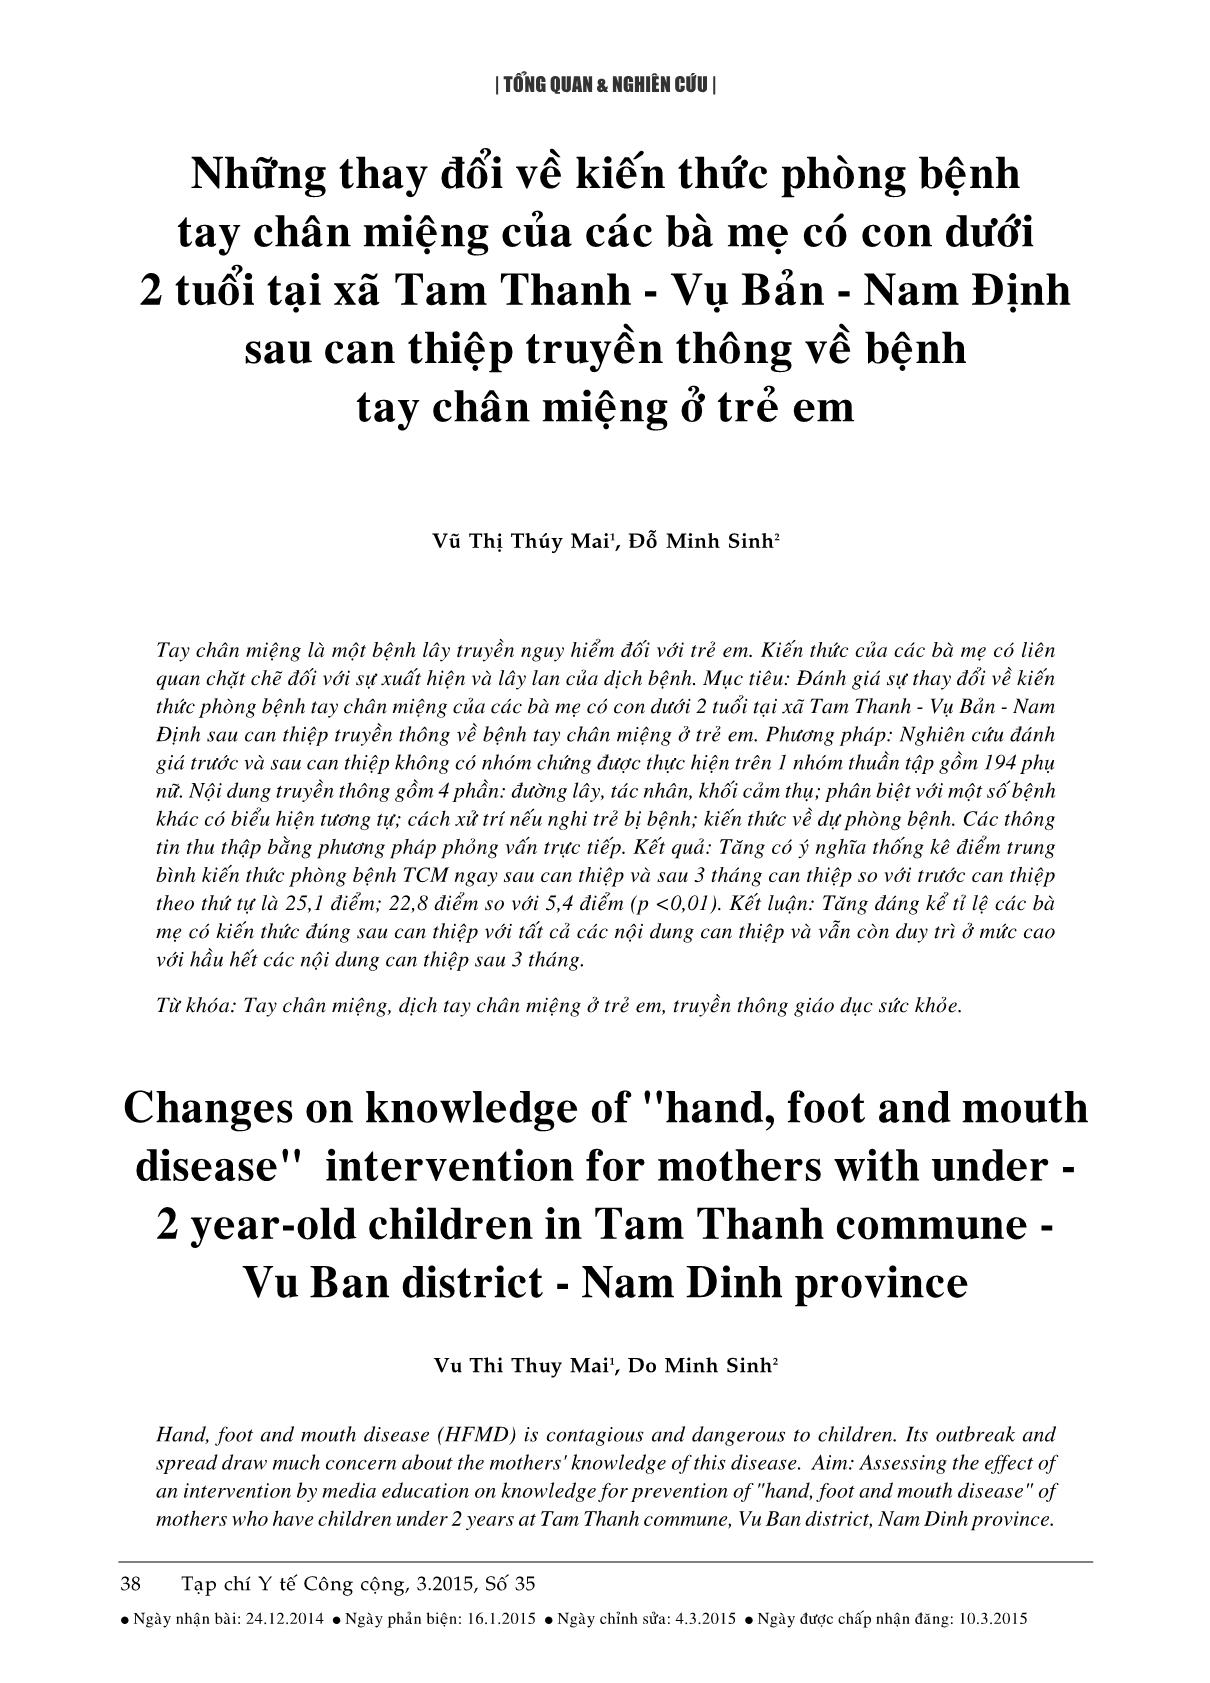 Những thay đổi về kiến thức phòng bệnh tay chân miệng của các bà mẹ có con dưới 2 tuổi tại xã Tam Thanh - Vụ Bản - Nam Định sau can thiệp truyền thông về bệnh tay chân miệng ở trẻ em trang 1